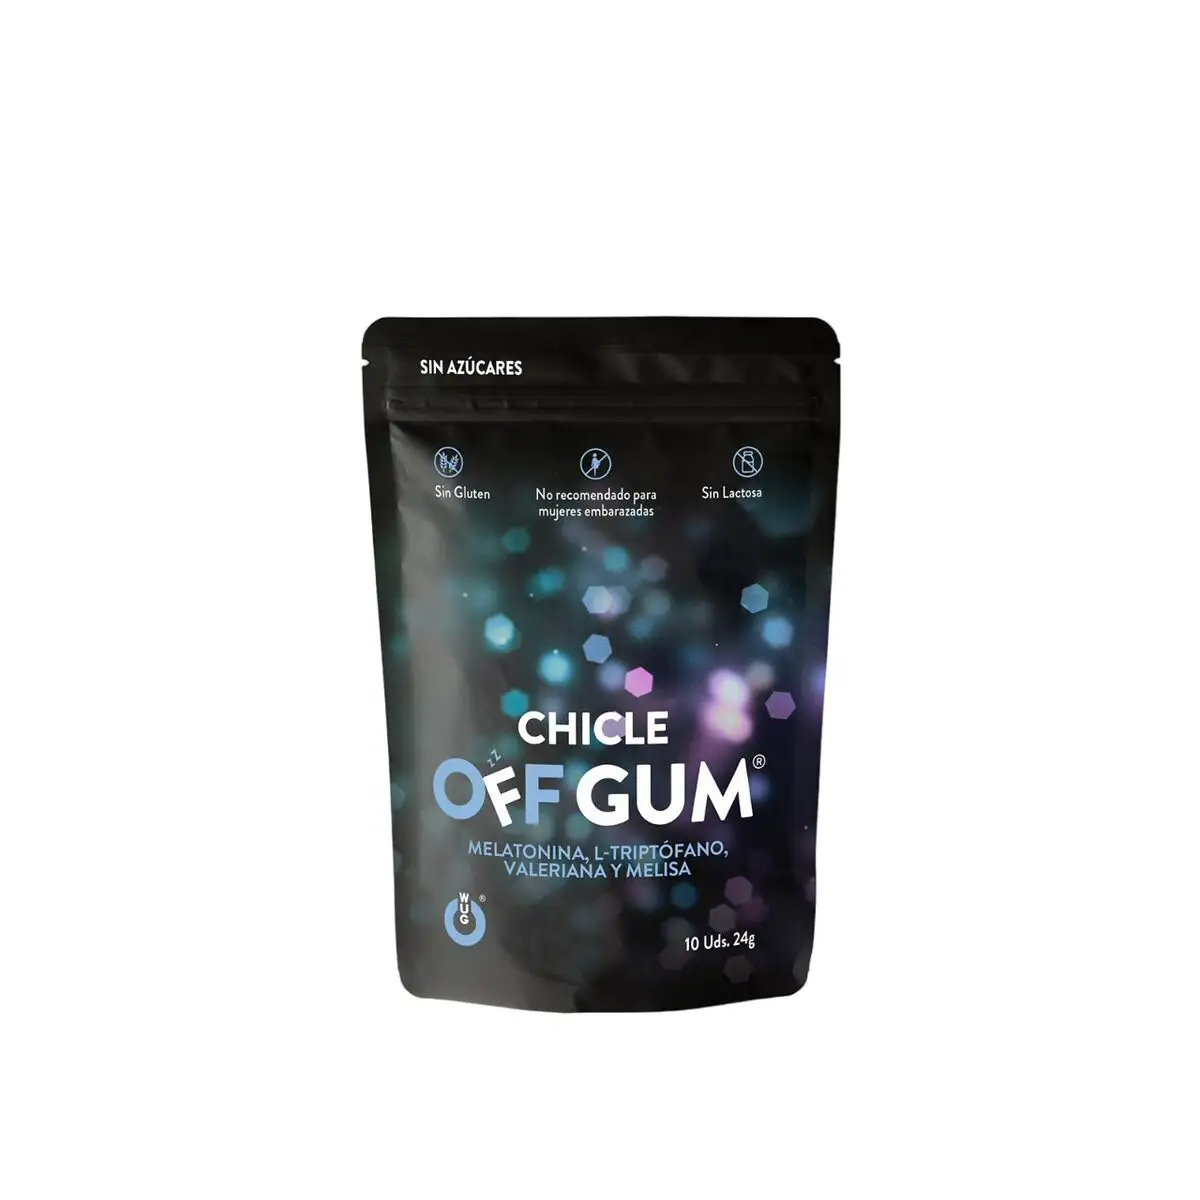 Chewing gum wug off gum 24 g_4550. DIAYTAR SENEGAL - Votre Source de Découvertes Shopping. Découvrez des trésors dans notre boutique en ligne, allant des articles artisanaux aux innovations modernes.